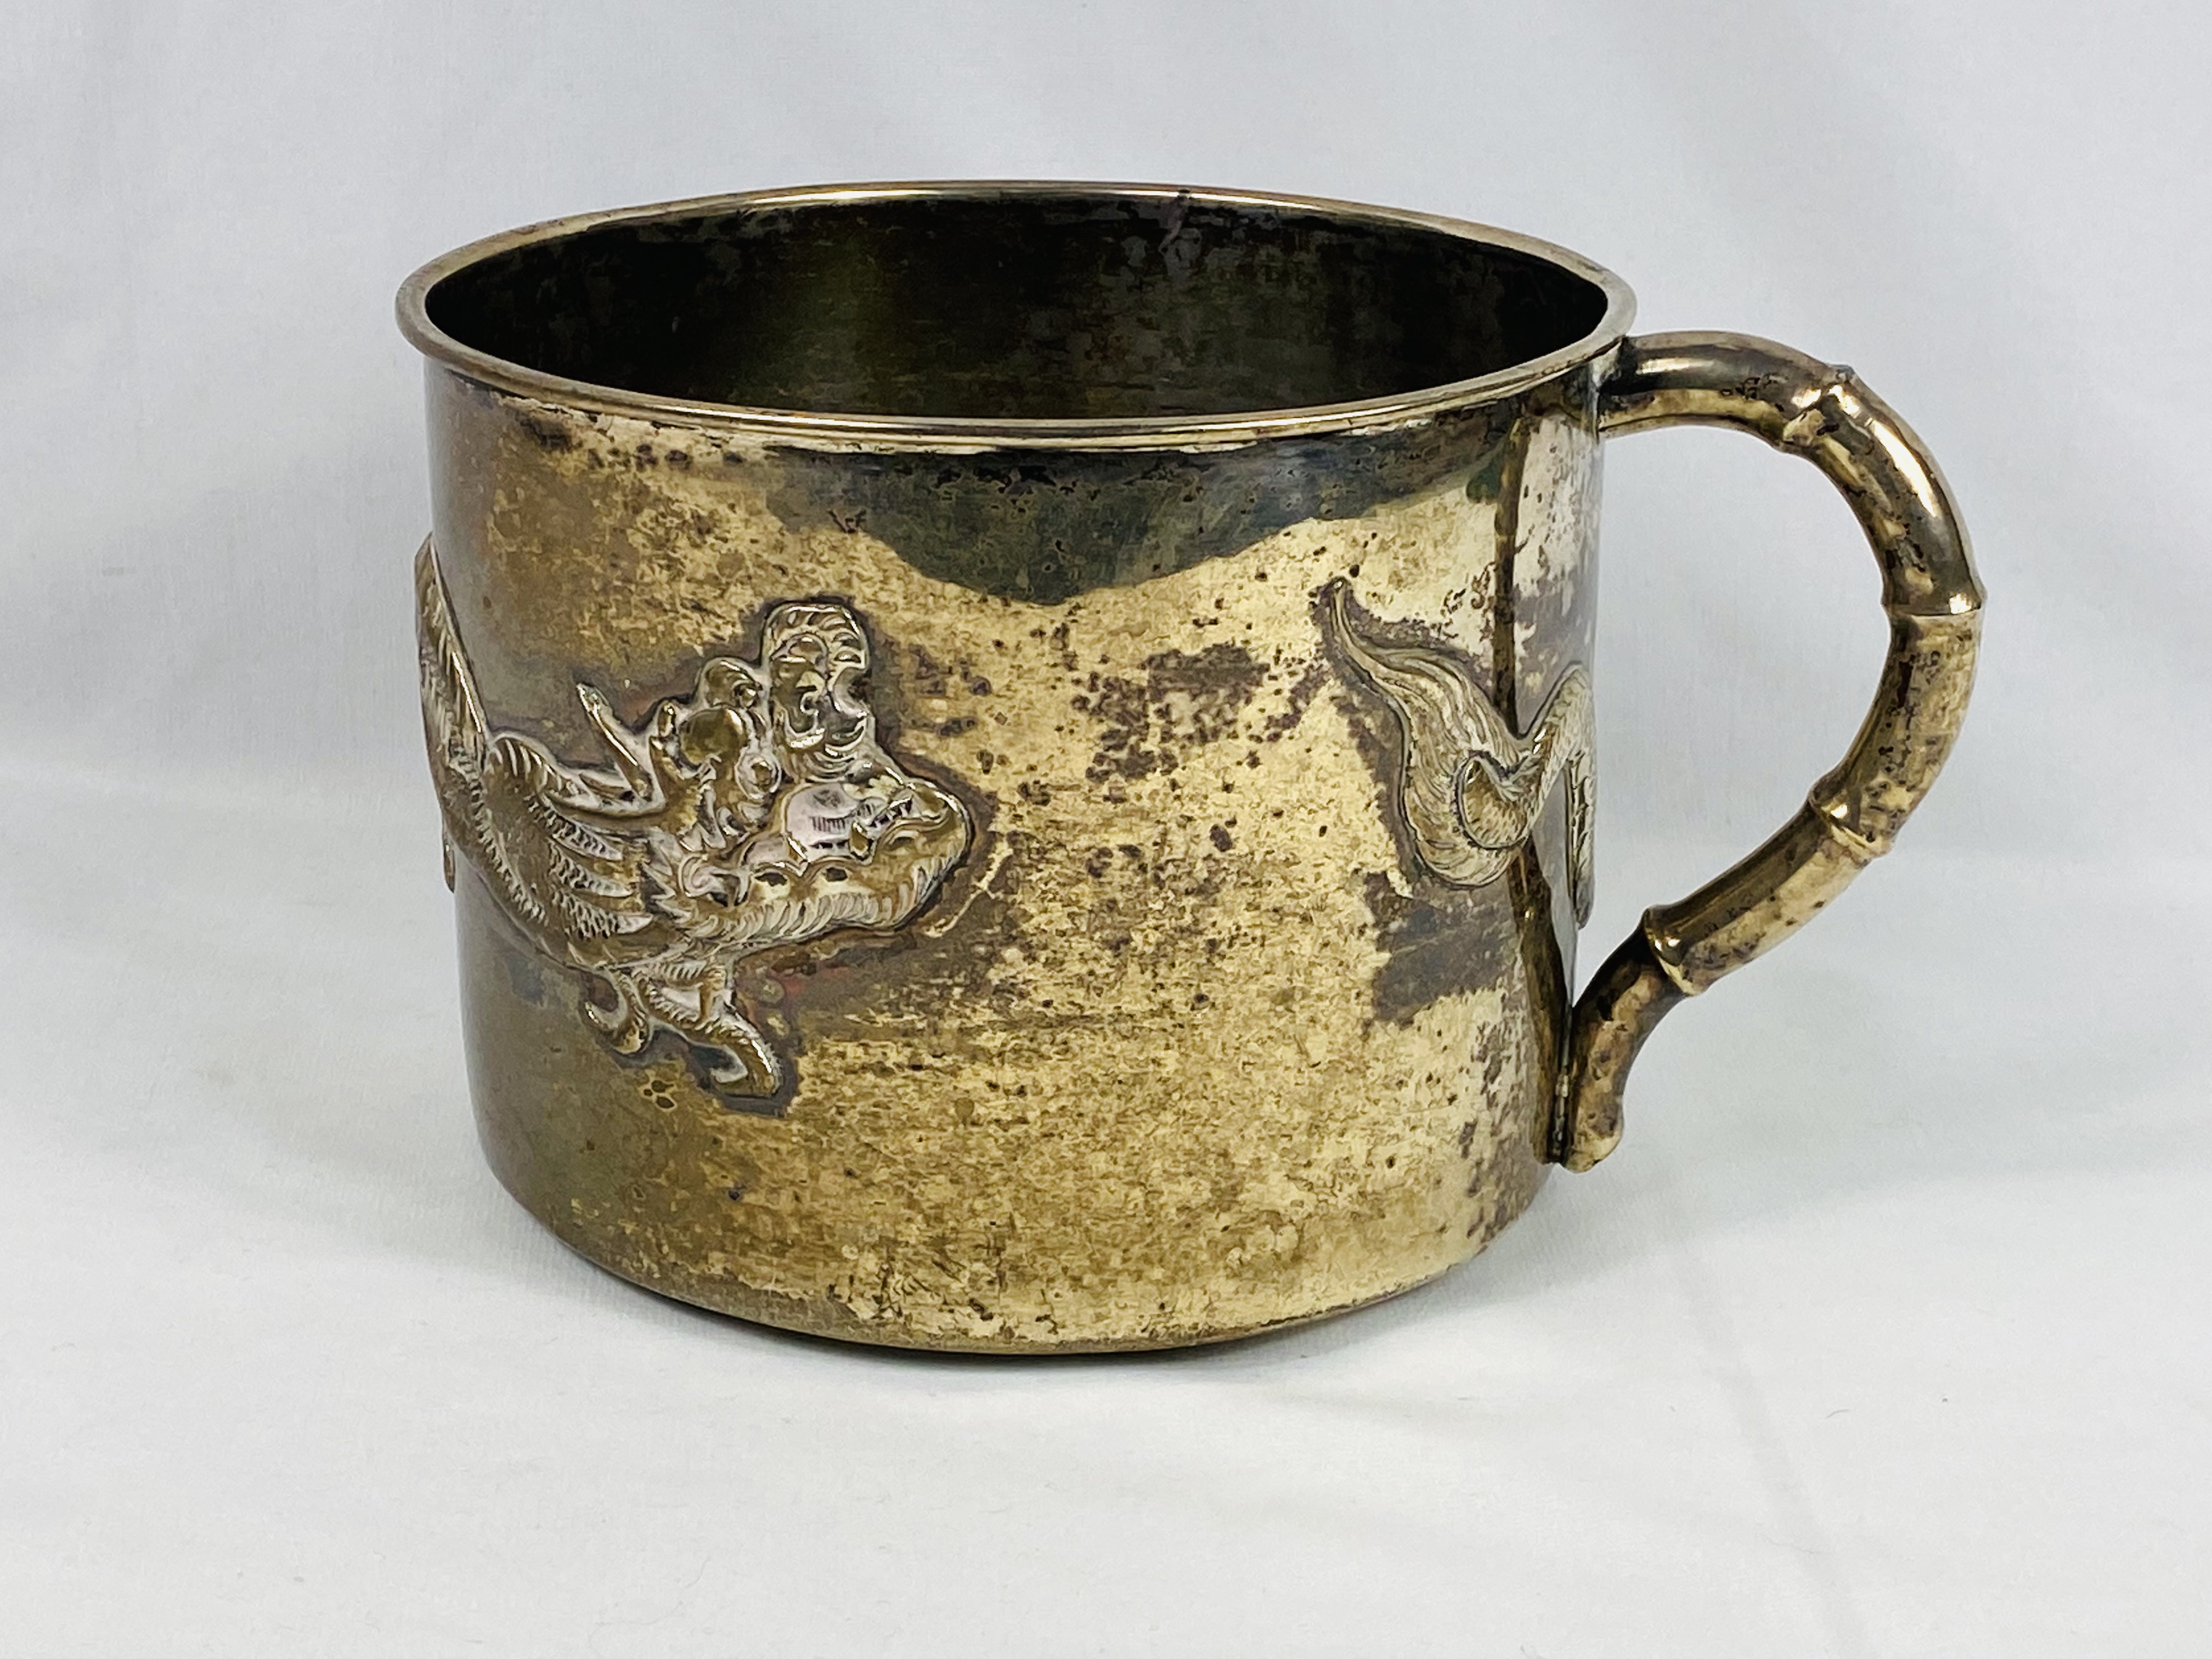 White metal mug with applied dragon